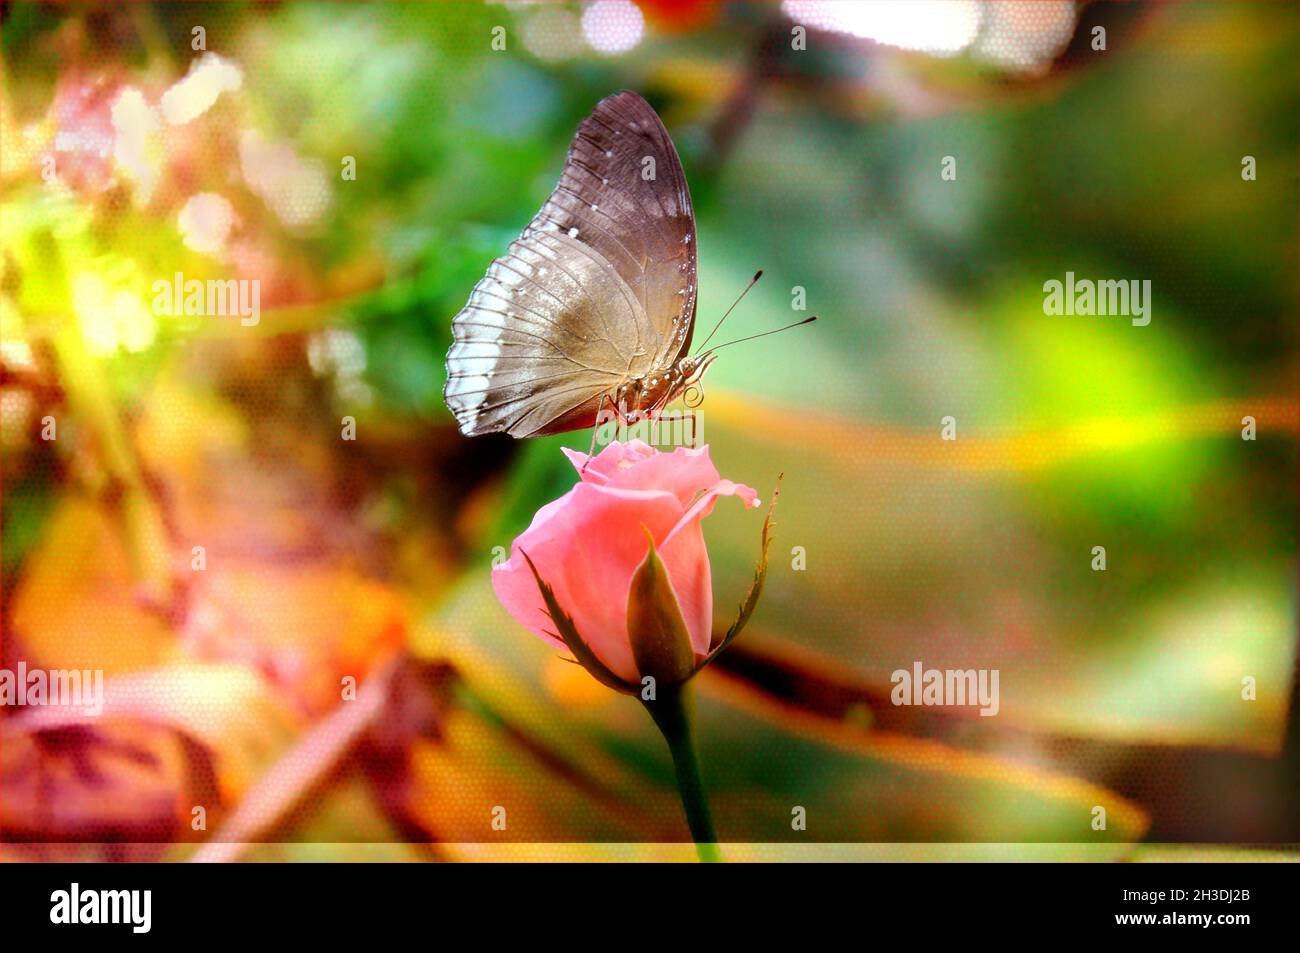 Wunderschöne Blumen- und Schmetterlingsfotografie Stockfoto